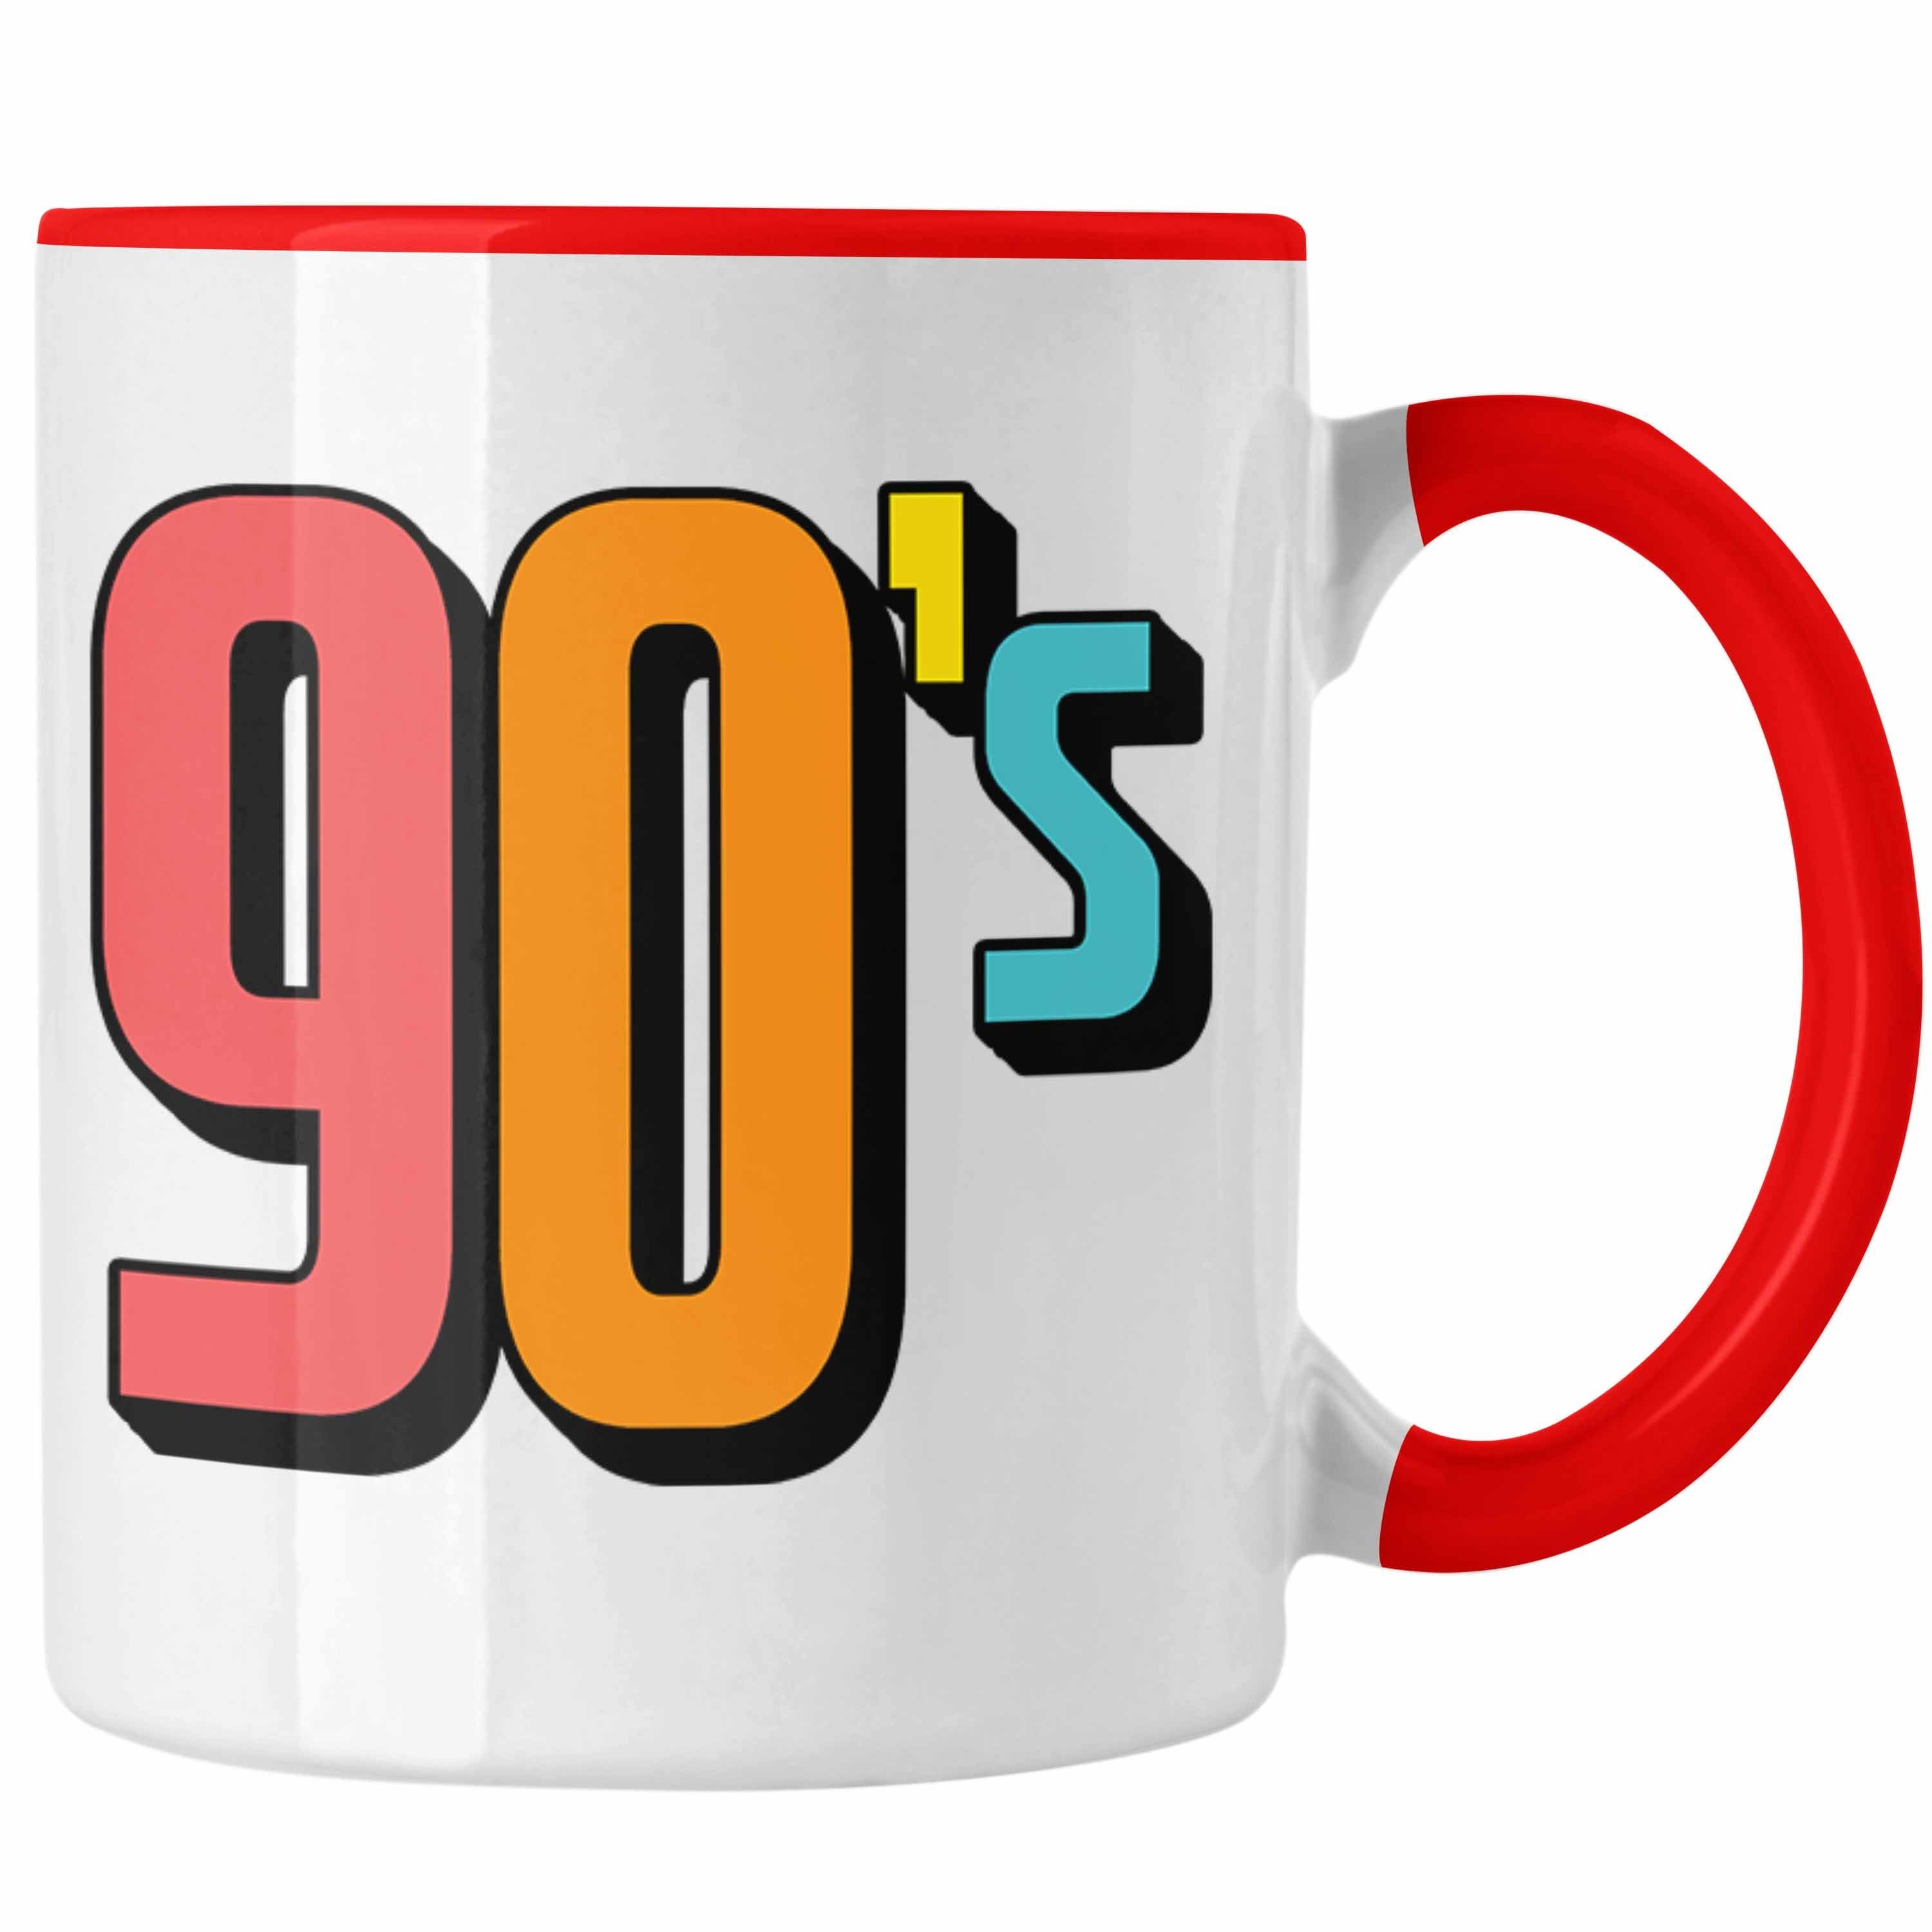 Trendation Tasse 90er Jahre Tasse Nostalgiker Retro Rot - "90's" für Geschenk